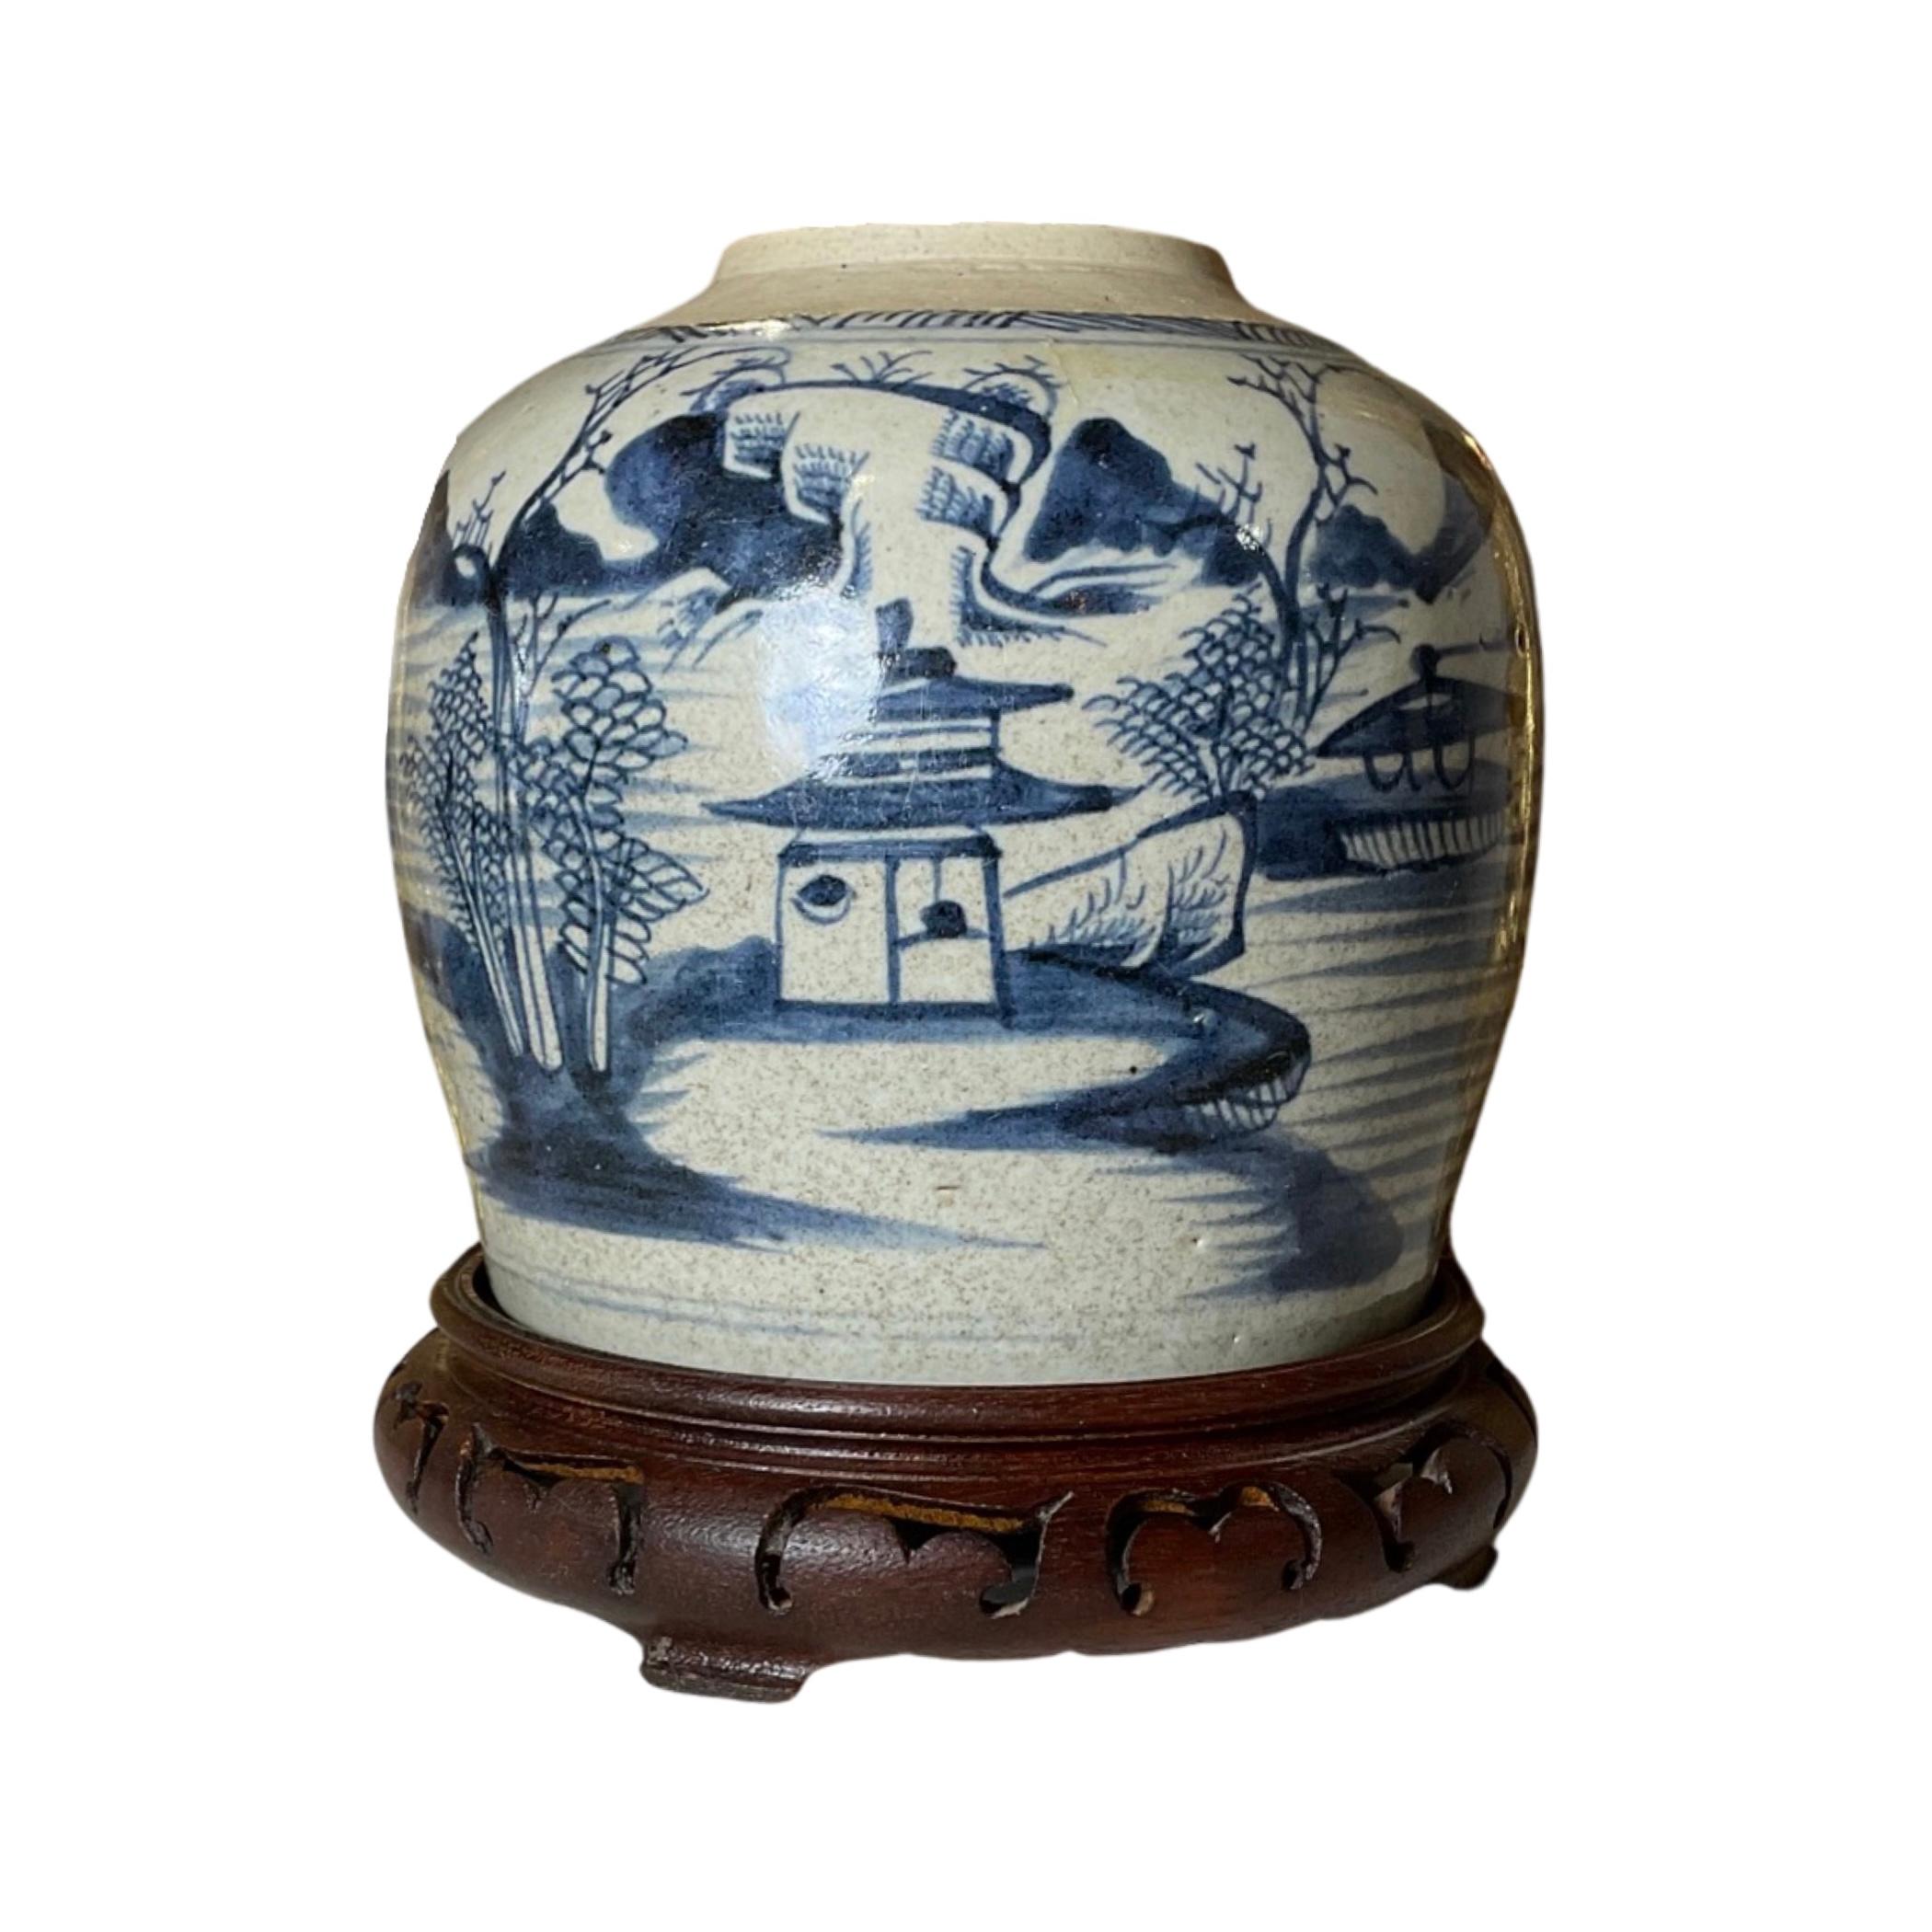 Cette exquise jarre de stockage en porcelaine chinoise du XVIIIe siècle est magnifiquement fabriquée et est accompagnée d'un bouchon et d'un support en bois. Parfait pour ranger divers objets, il constitue un ajout élégant et pratique à toute maison.